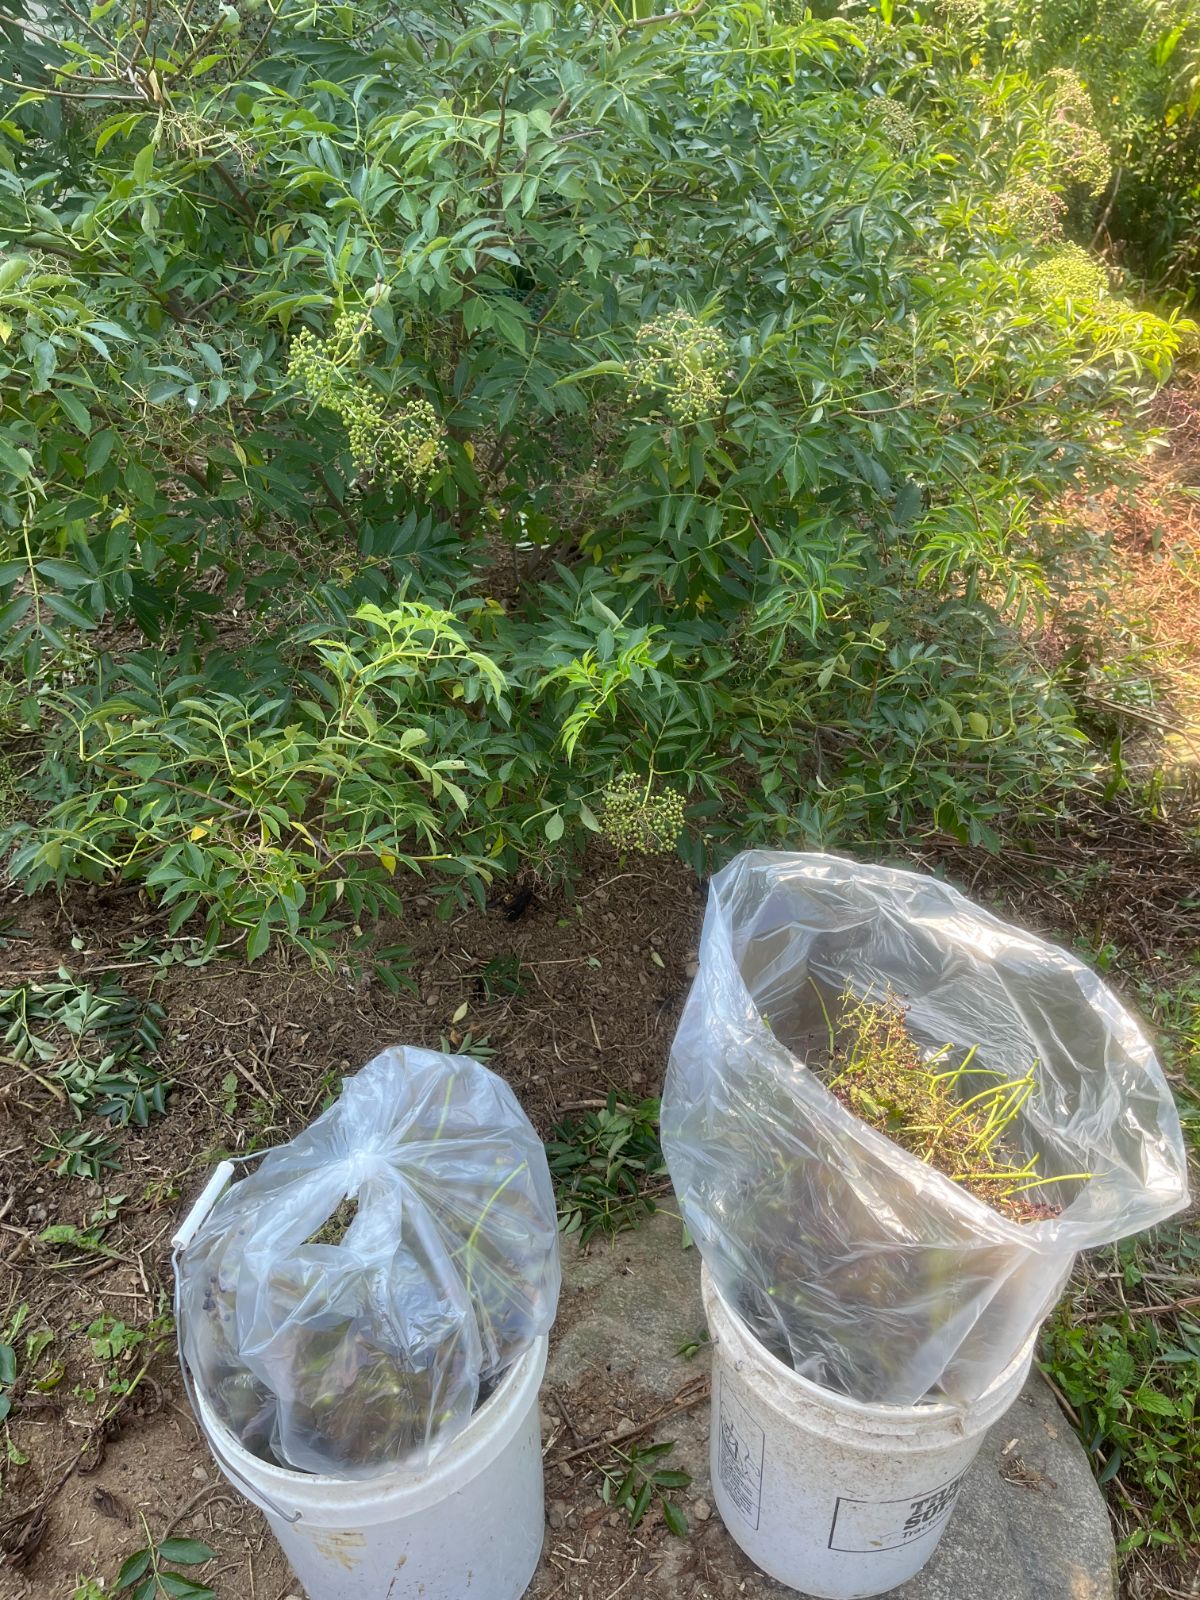 Elderberries picked into bags in buckets